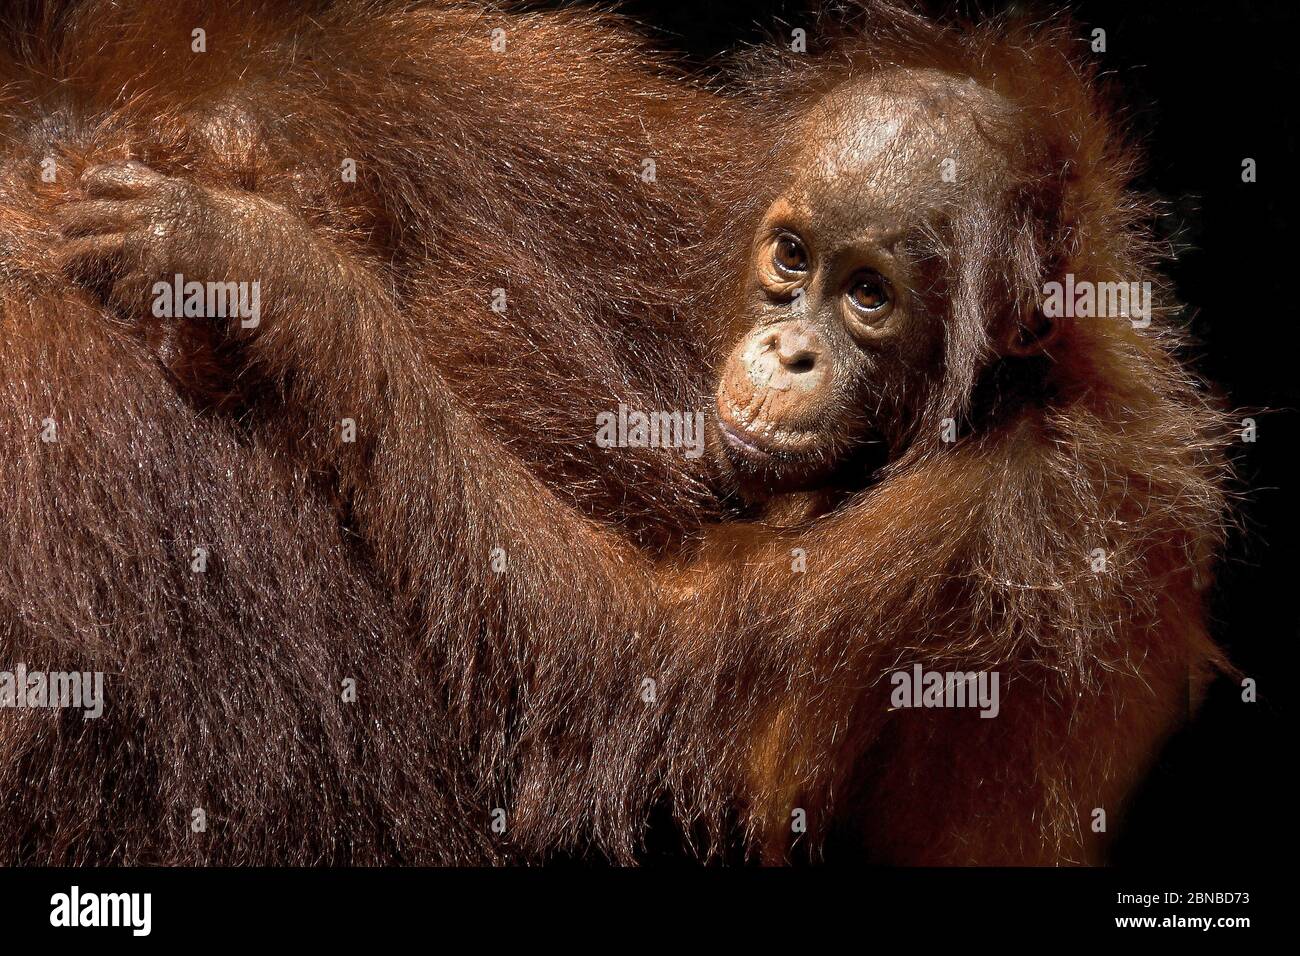 Bornean orangutan (Pongo pygmaeus pygmaeus), female with pup, Indonesia, Borneo Stock Photo